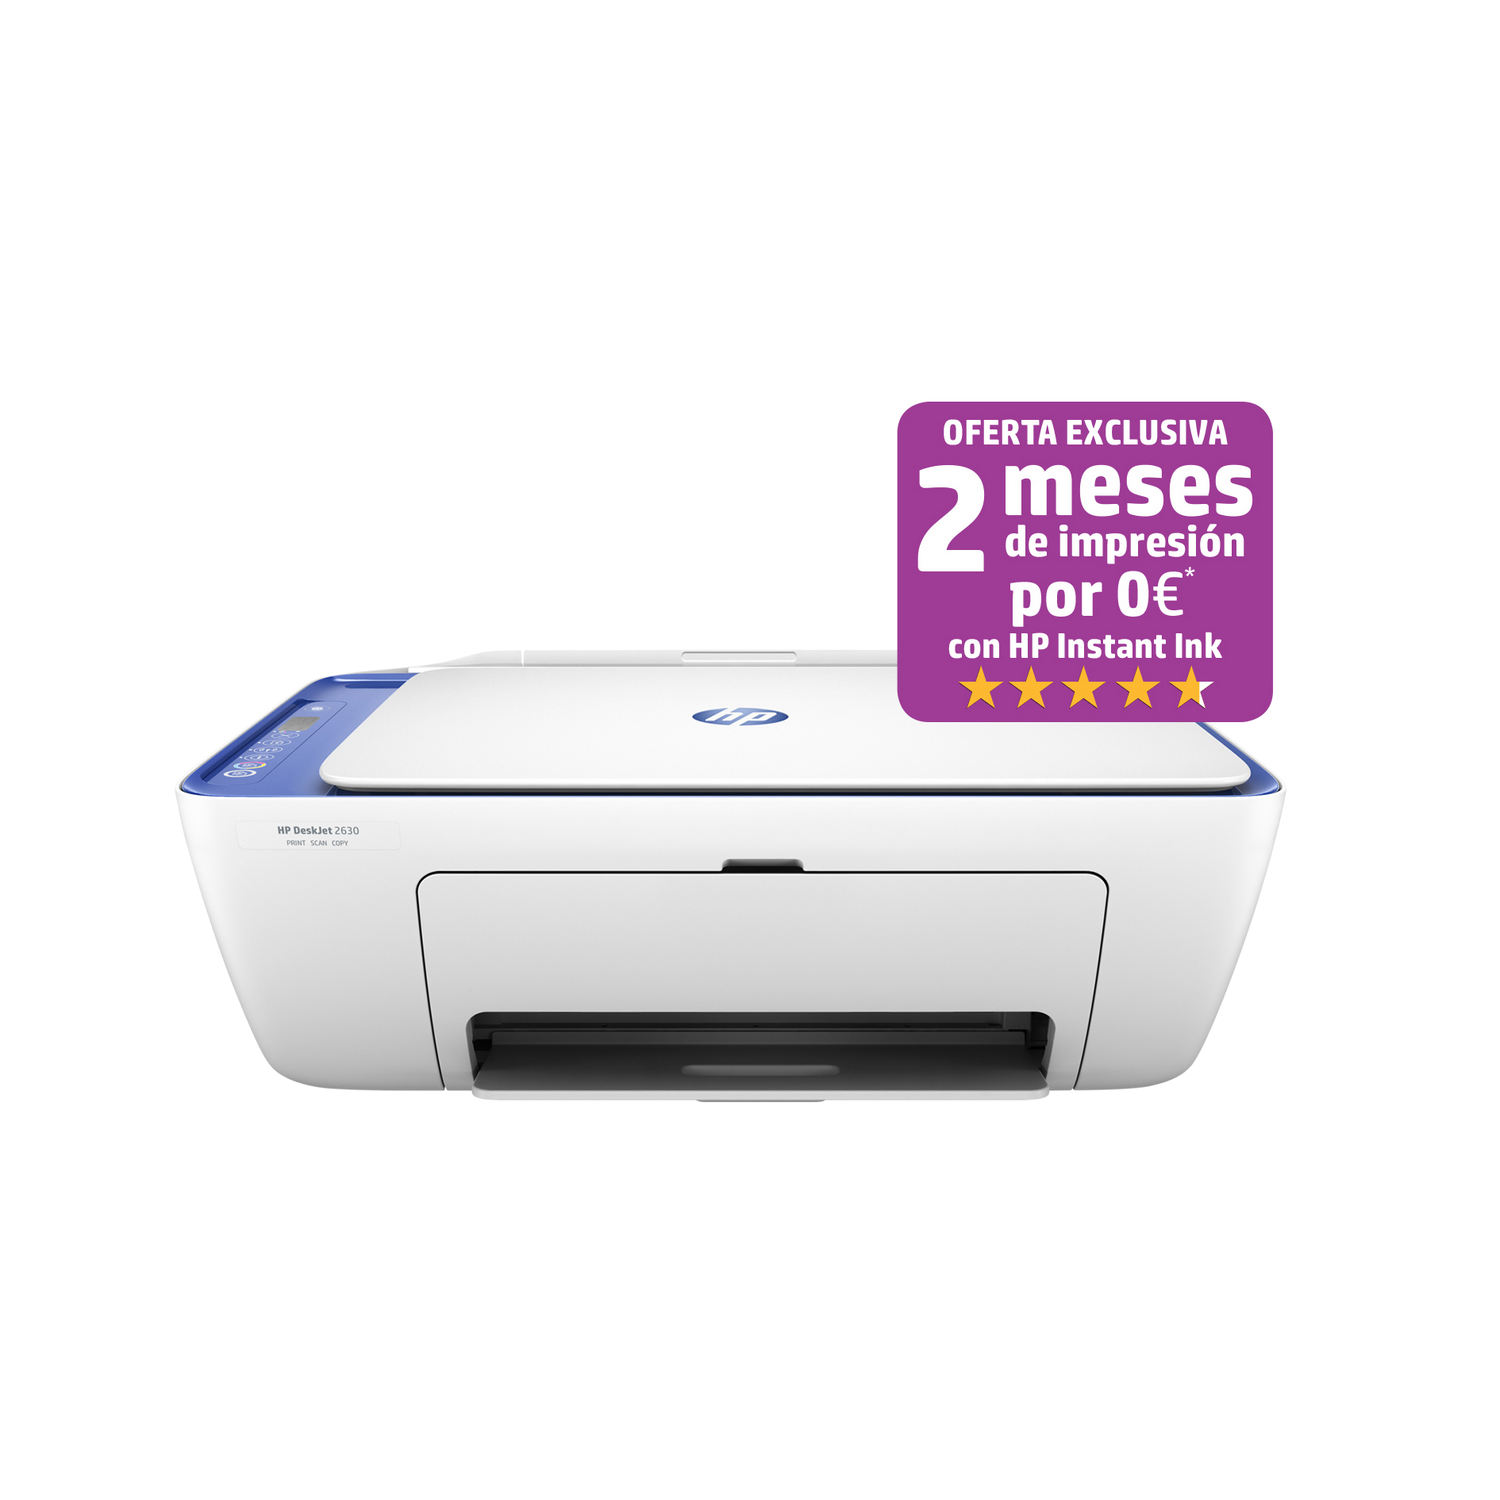 Impresora Hp Deskjet 2630 blanco 3.42kg lcd inyección color 5.5 pppm wifi usb 2.0 compatible con instant ink allinone v1n03b629 tinta imprime 2